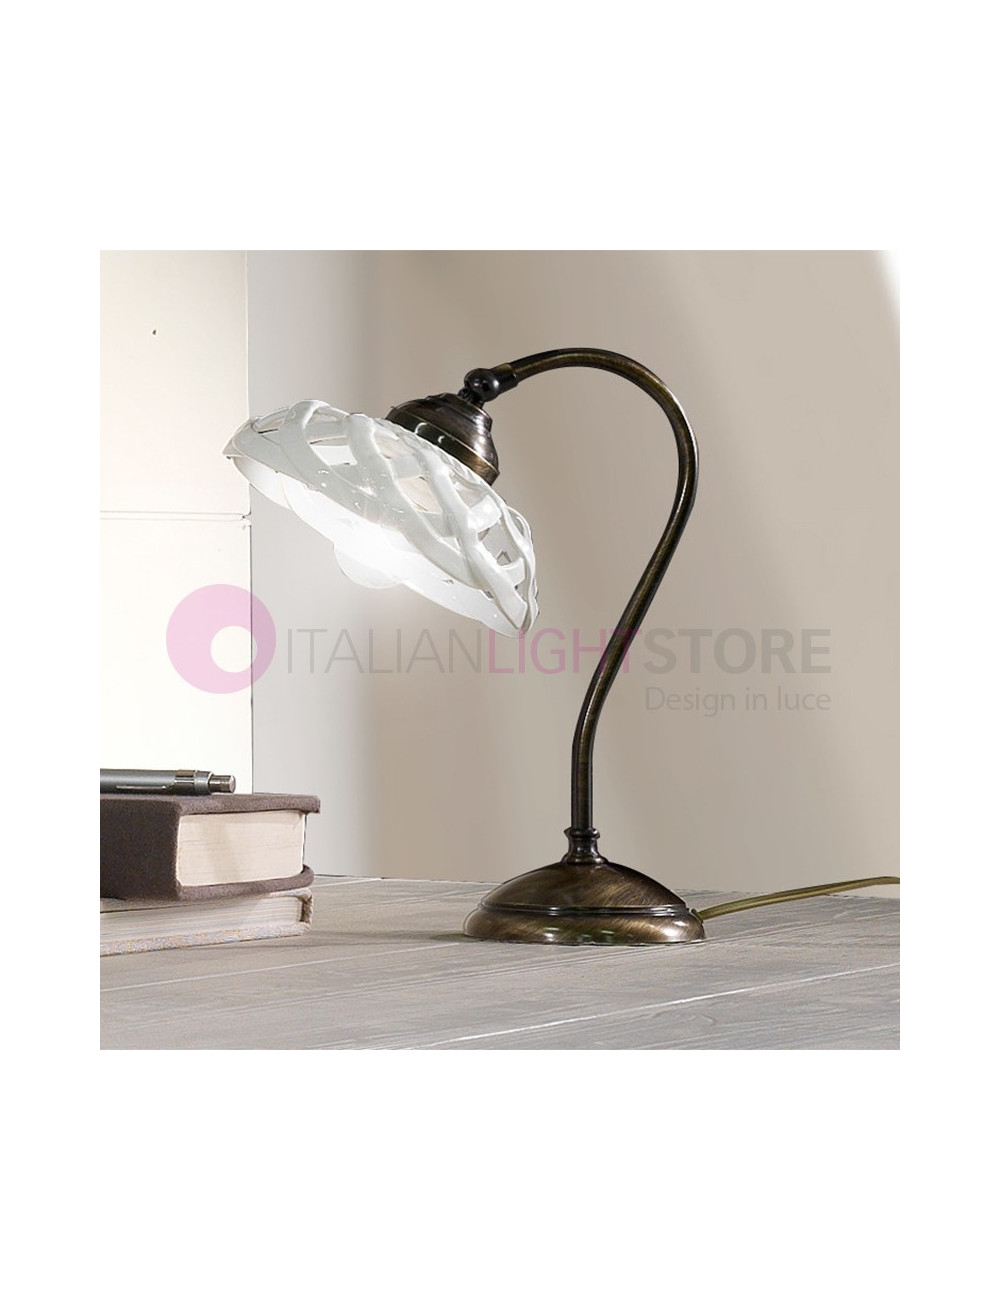 VIGNANOVA Table Lamp Ceramic Brass Rustic | Ceramiche Borso